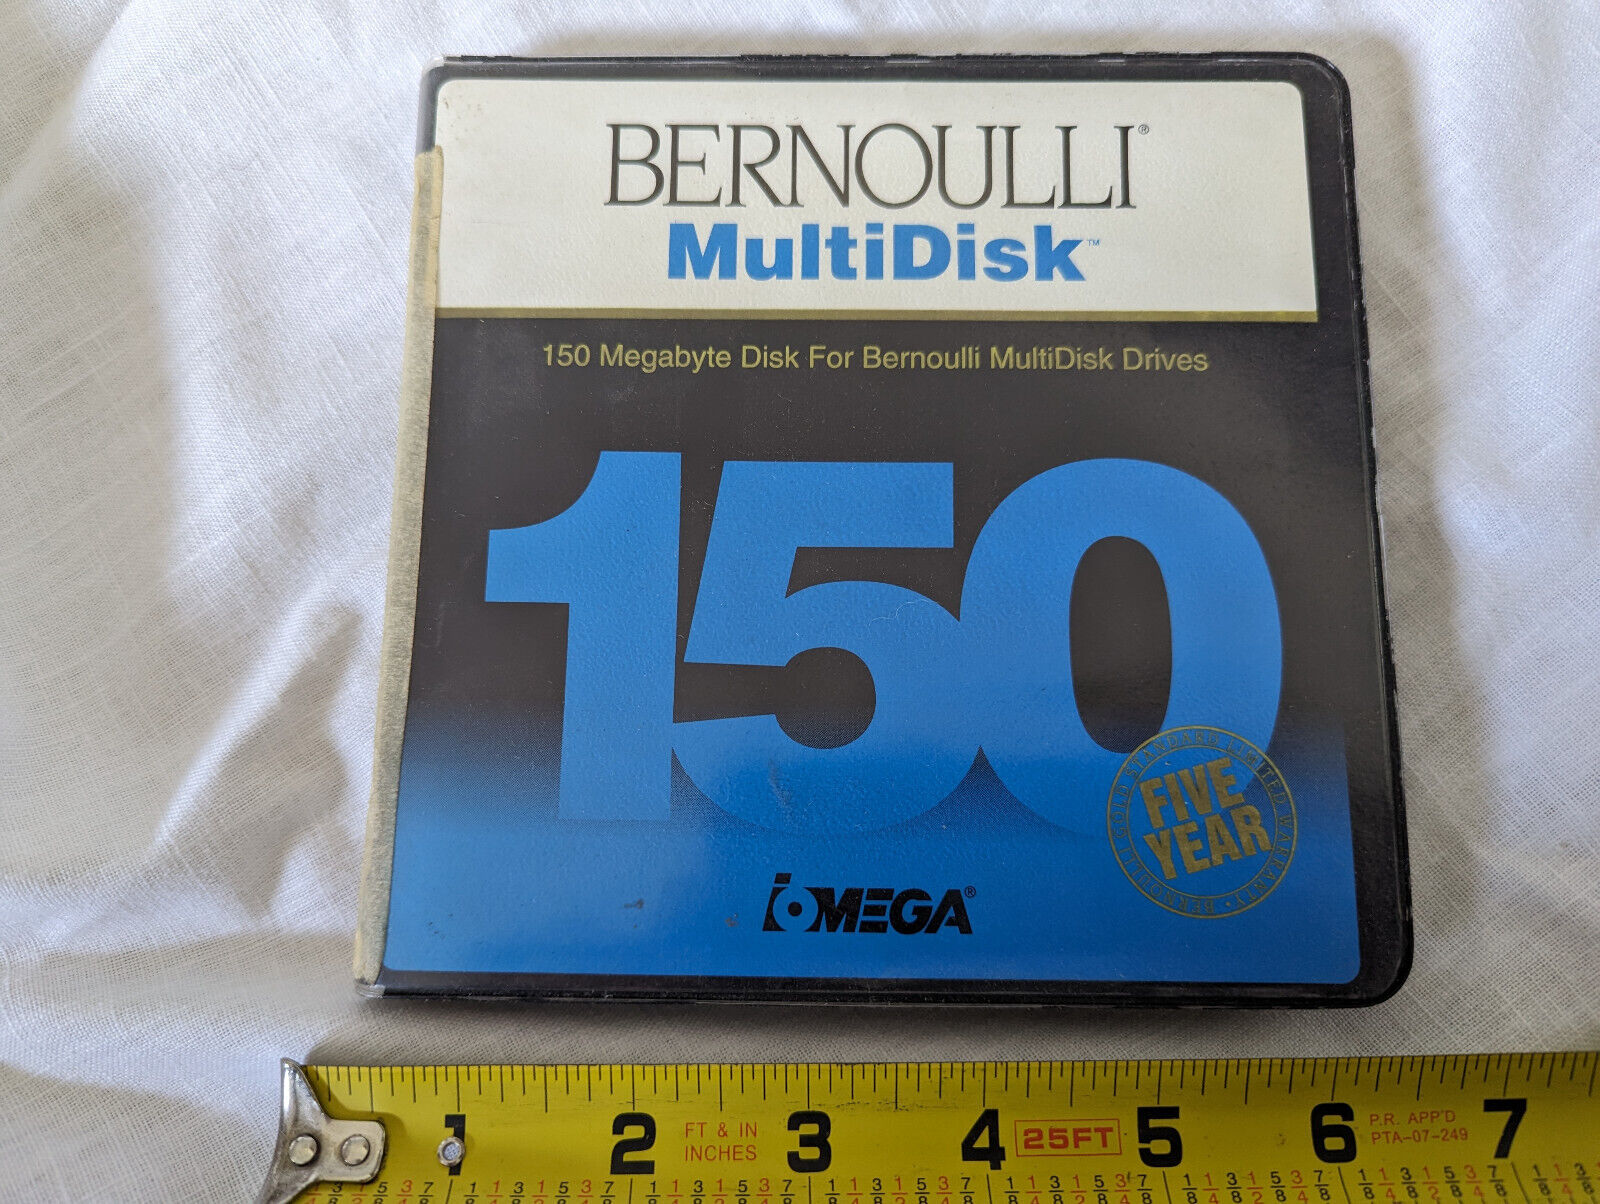 iOmega Bernoulli 150 Megabyte Disk for MultiDisk Drives computer storage in case